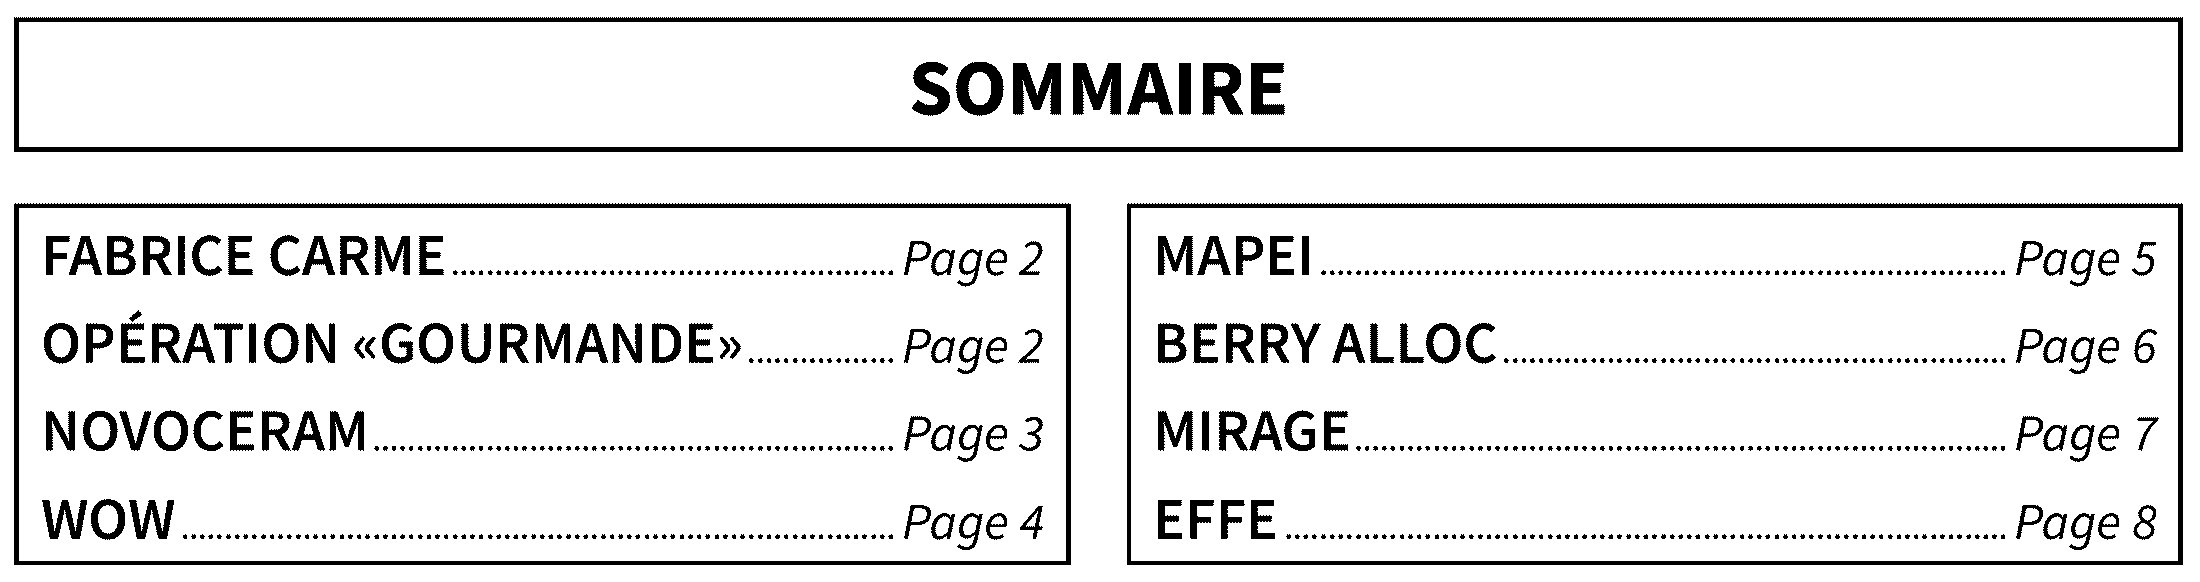 sommaine-dnac-09-22